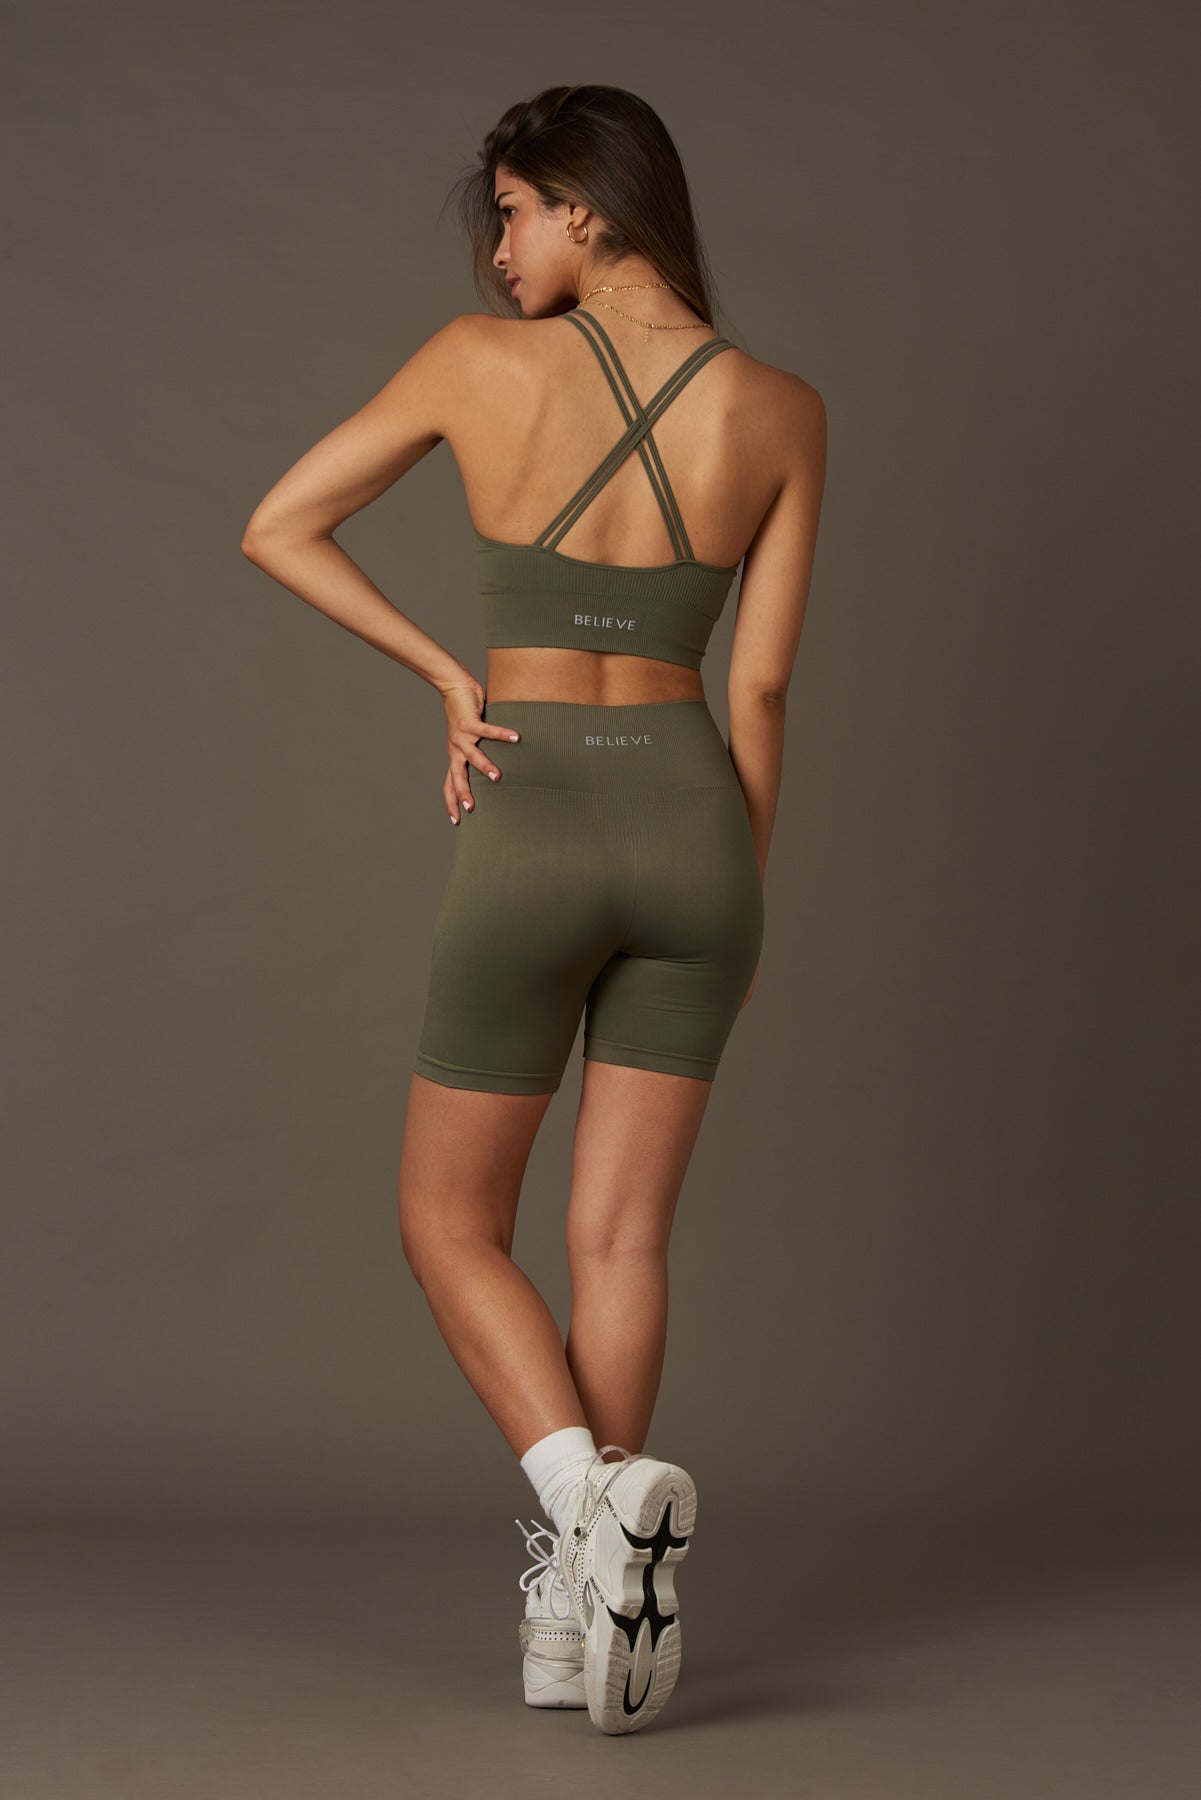 Solar-BH bei Caqui-Bras-Kleidung kaufen Nachhaltige recycelte Yoga-Leggings Frauen On-line Barcelona Believe Leichtathletik Nachhaltige recycelte Yoga-Kleidung